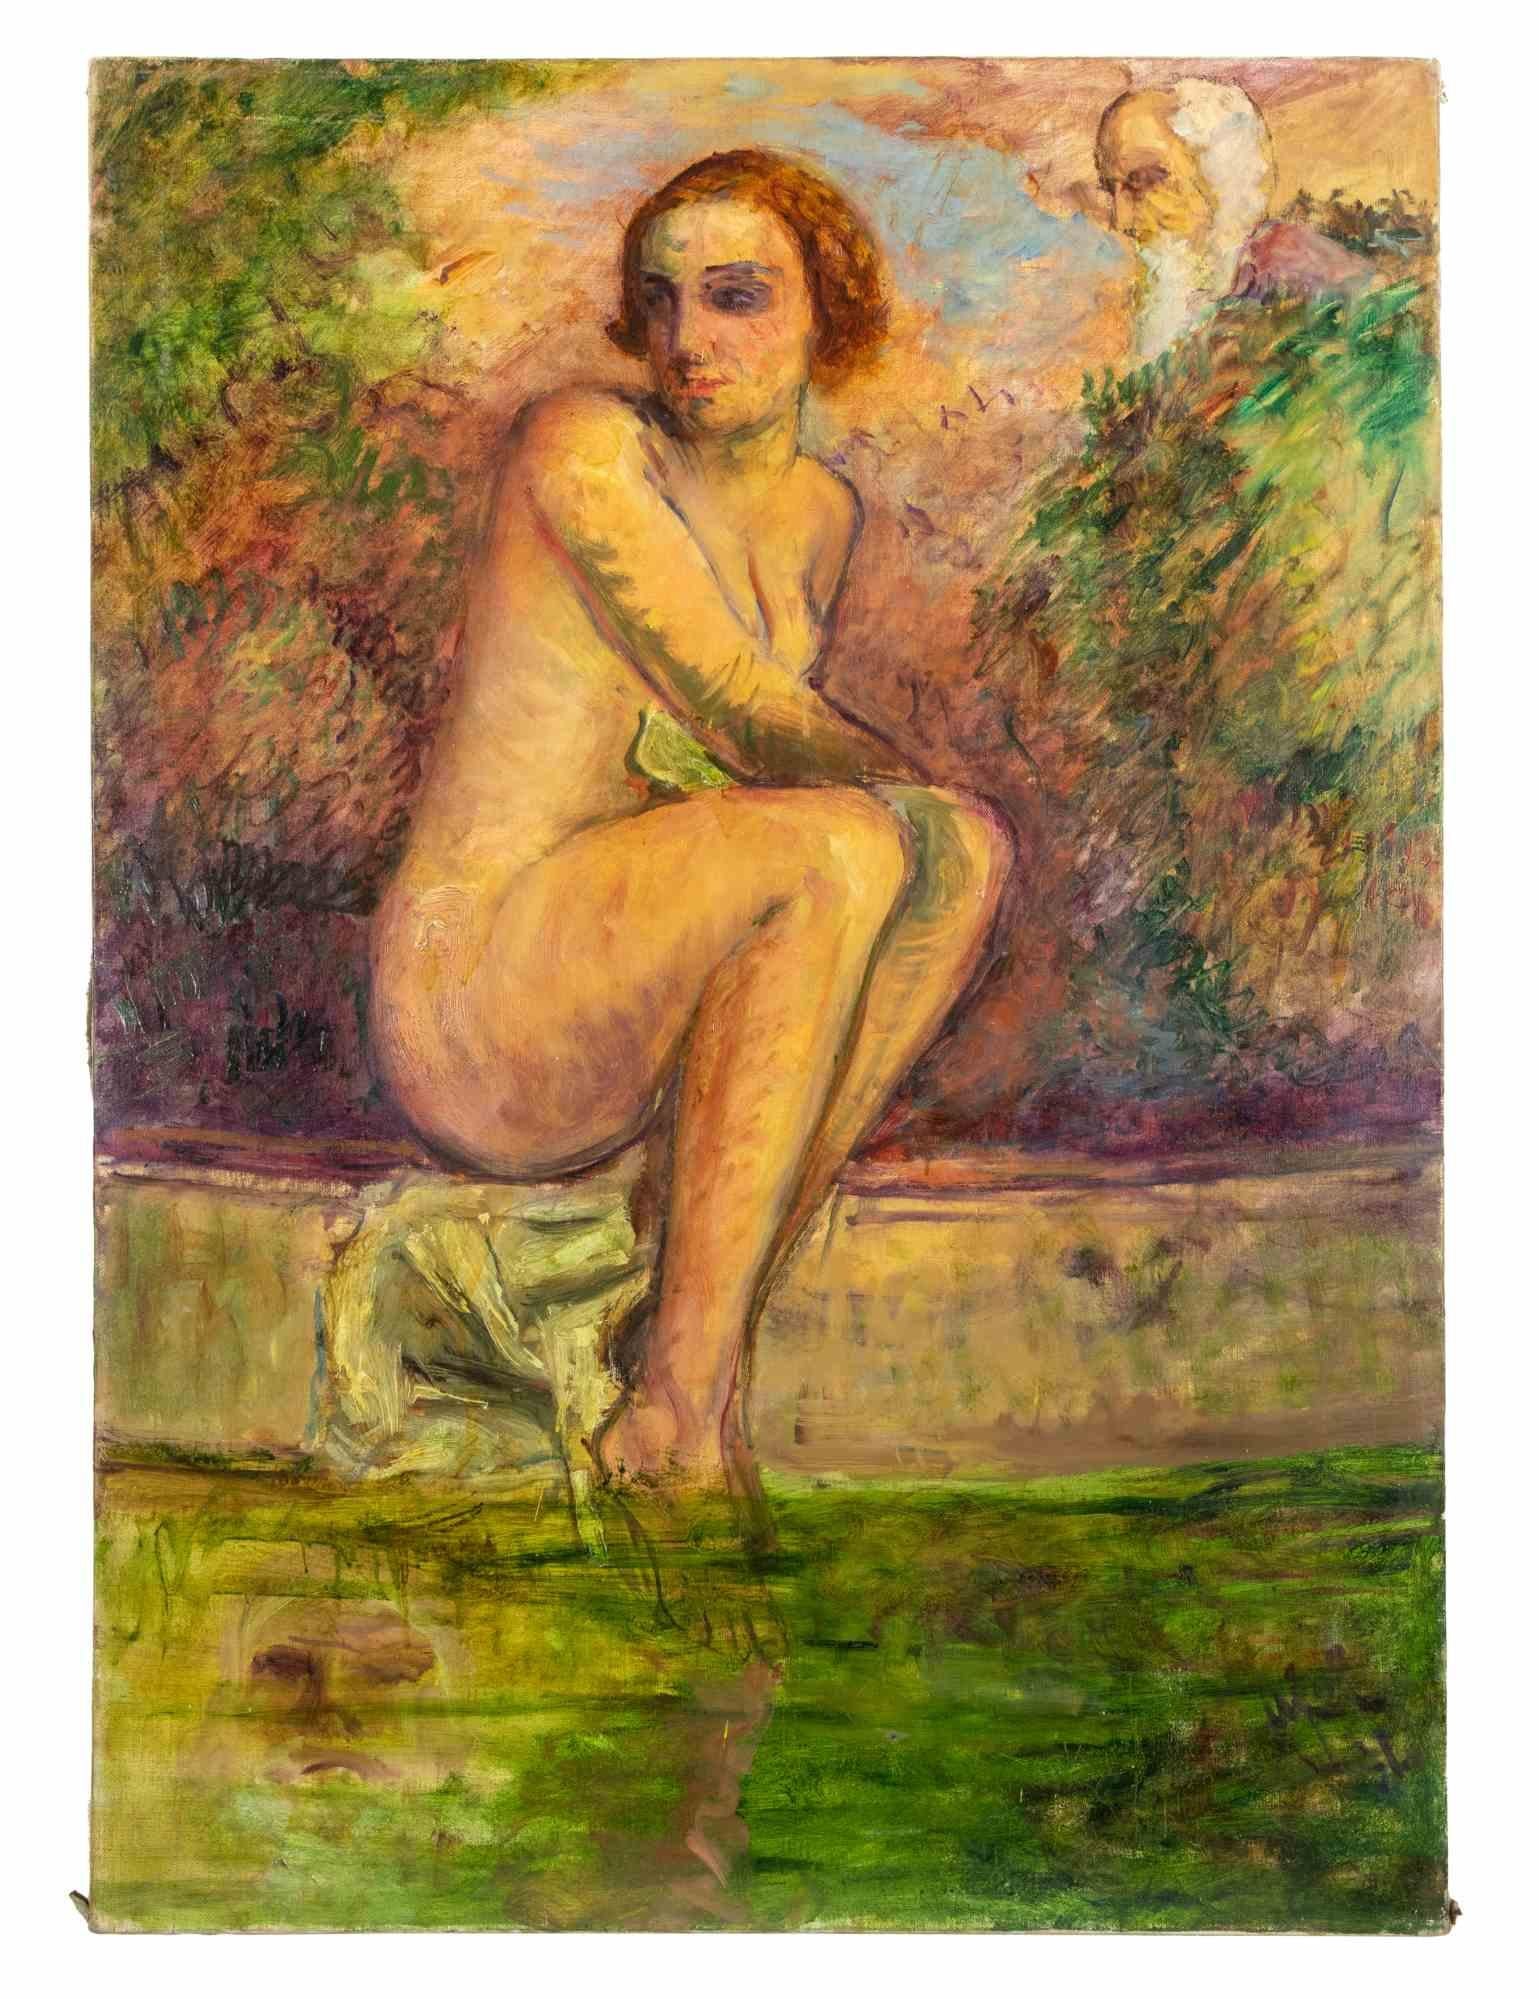 Der sitzende Akt ist ein Kunstwerk von Antonio Feltrinelli aus den 1930er Jahren. 

Öl auf Leinwand, 108 x 75 cm.

Provenienz: Galleria Pesaro, Mailand.

Gute Bedingungen!



Die Akte und Porträts gehören zu Feltrinellis Lieblingswerken und erinnern